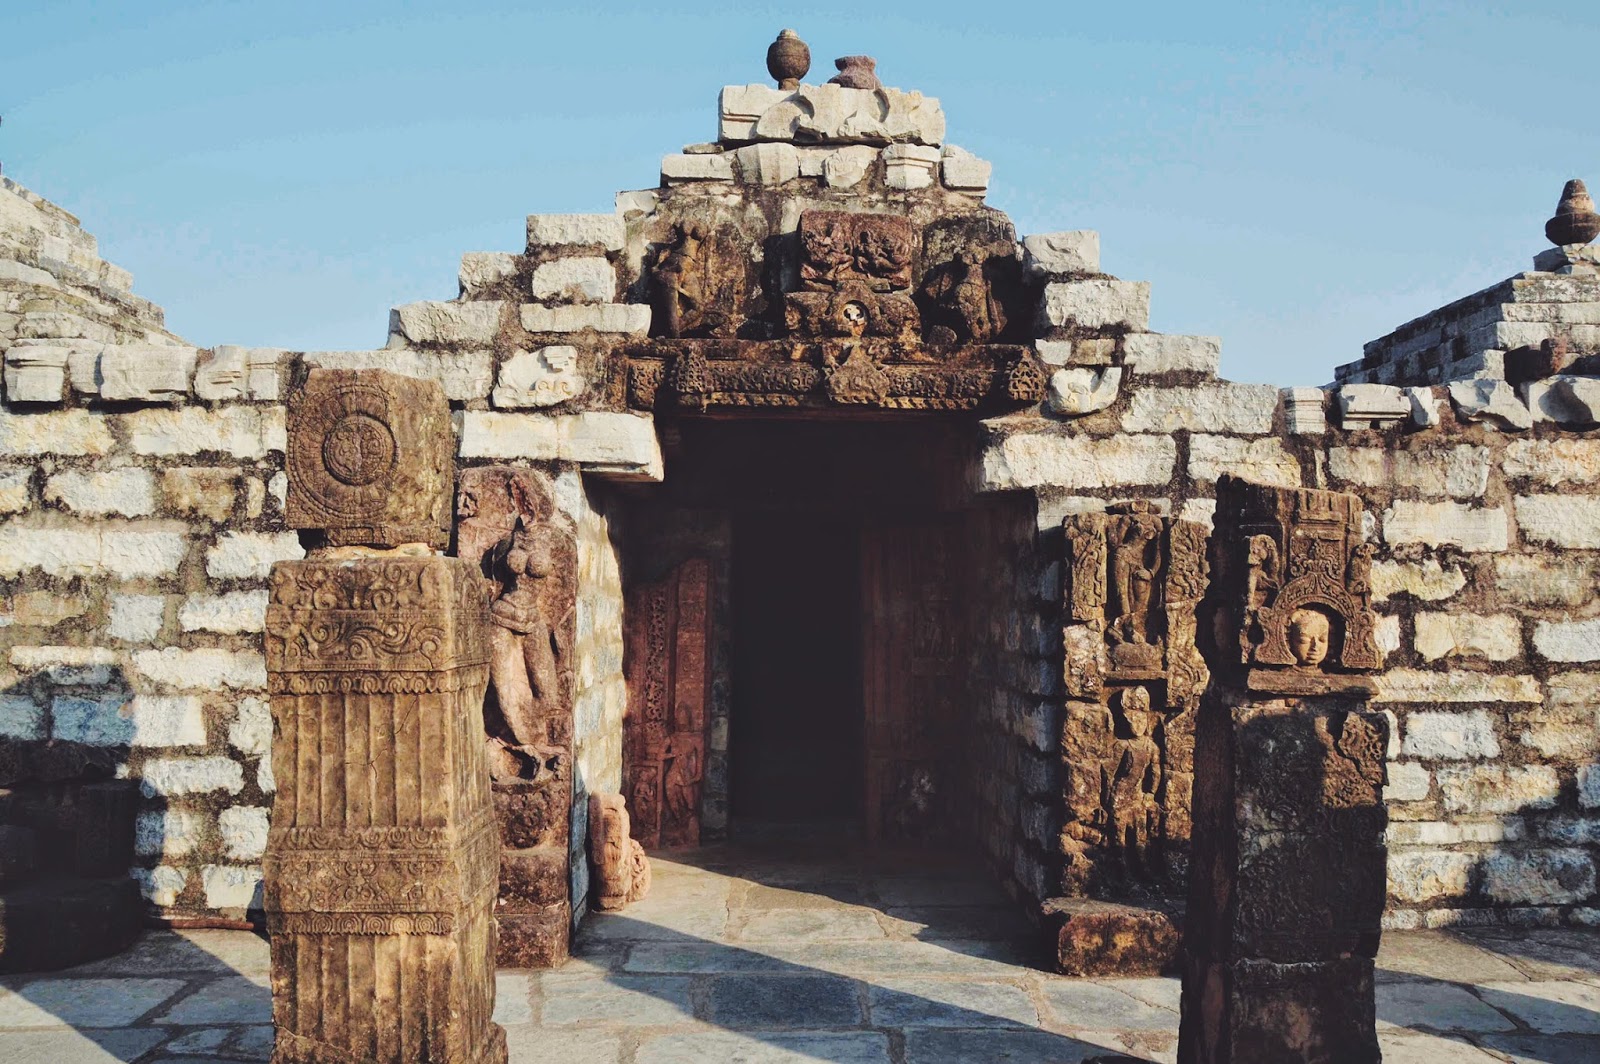 Sirpur Chhattisgarh surang tila carving shiva temple travel tourism 